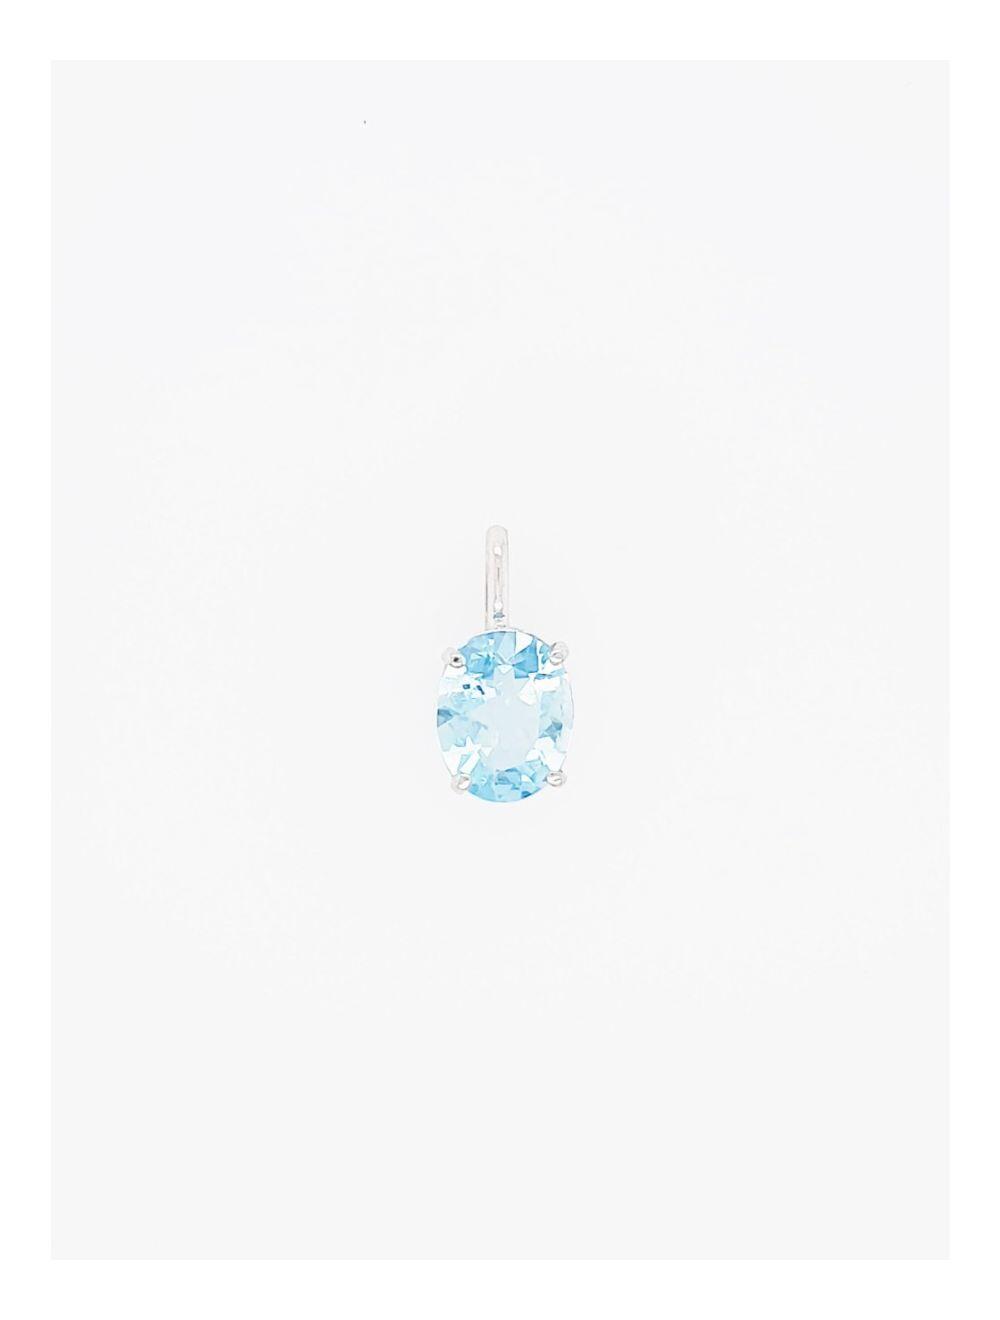 # 18K white gold pendant with aquamarine stone